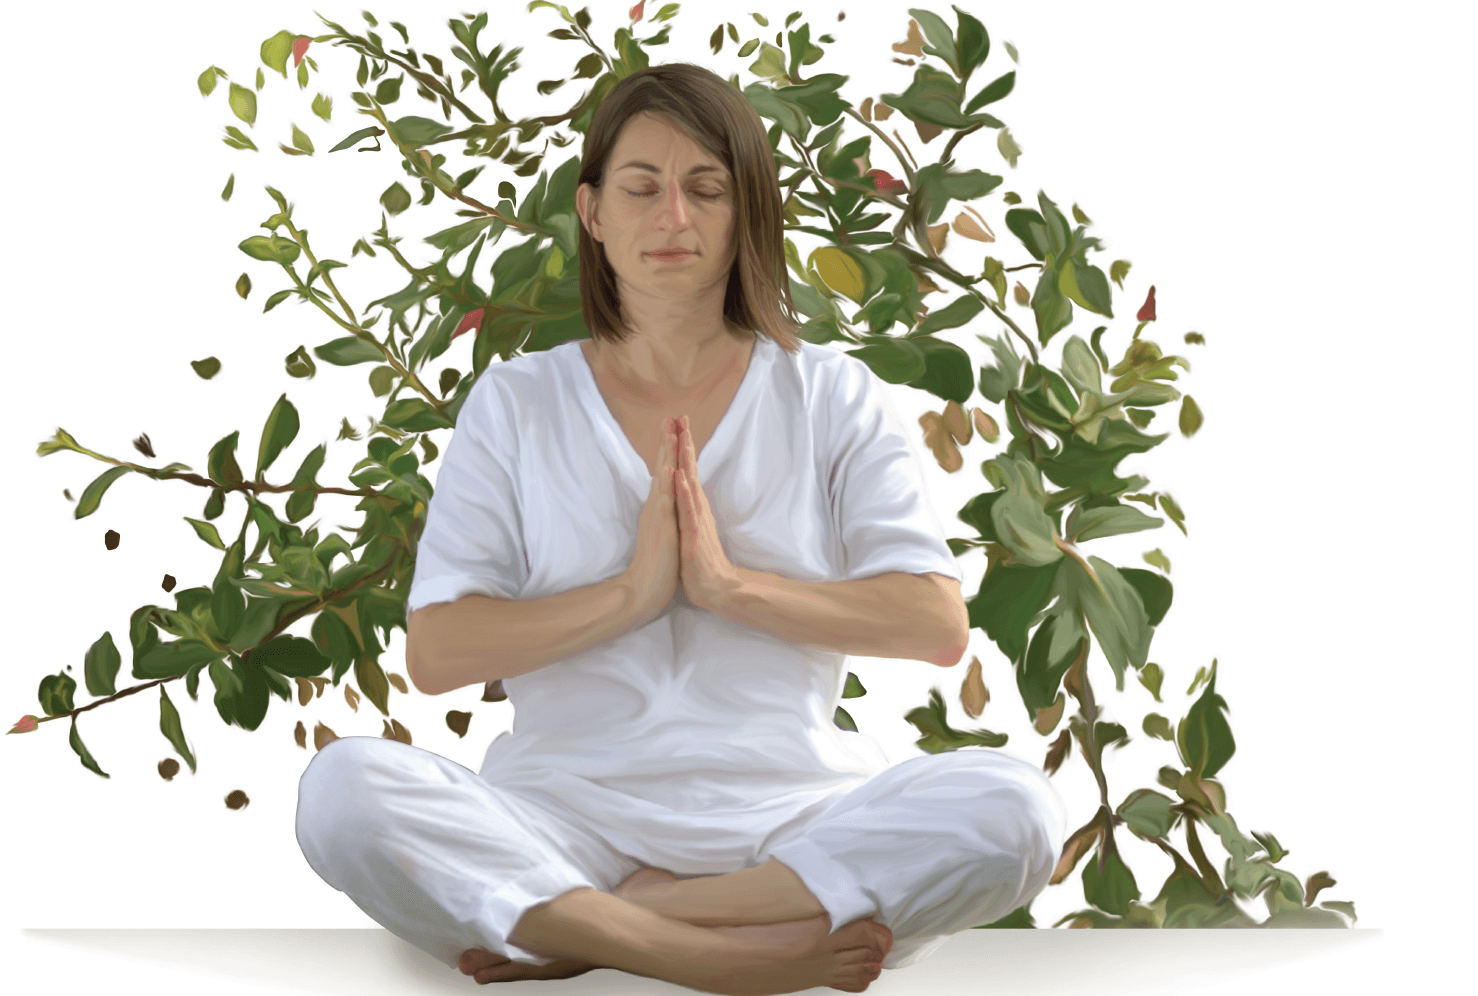 yoga retreat kerala